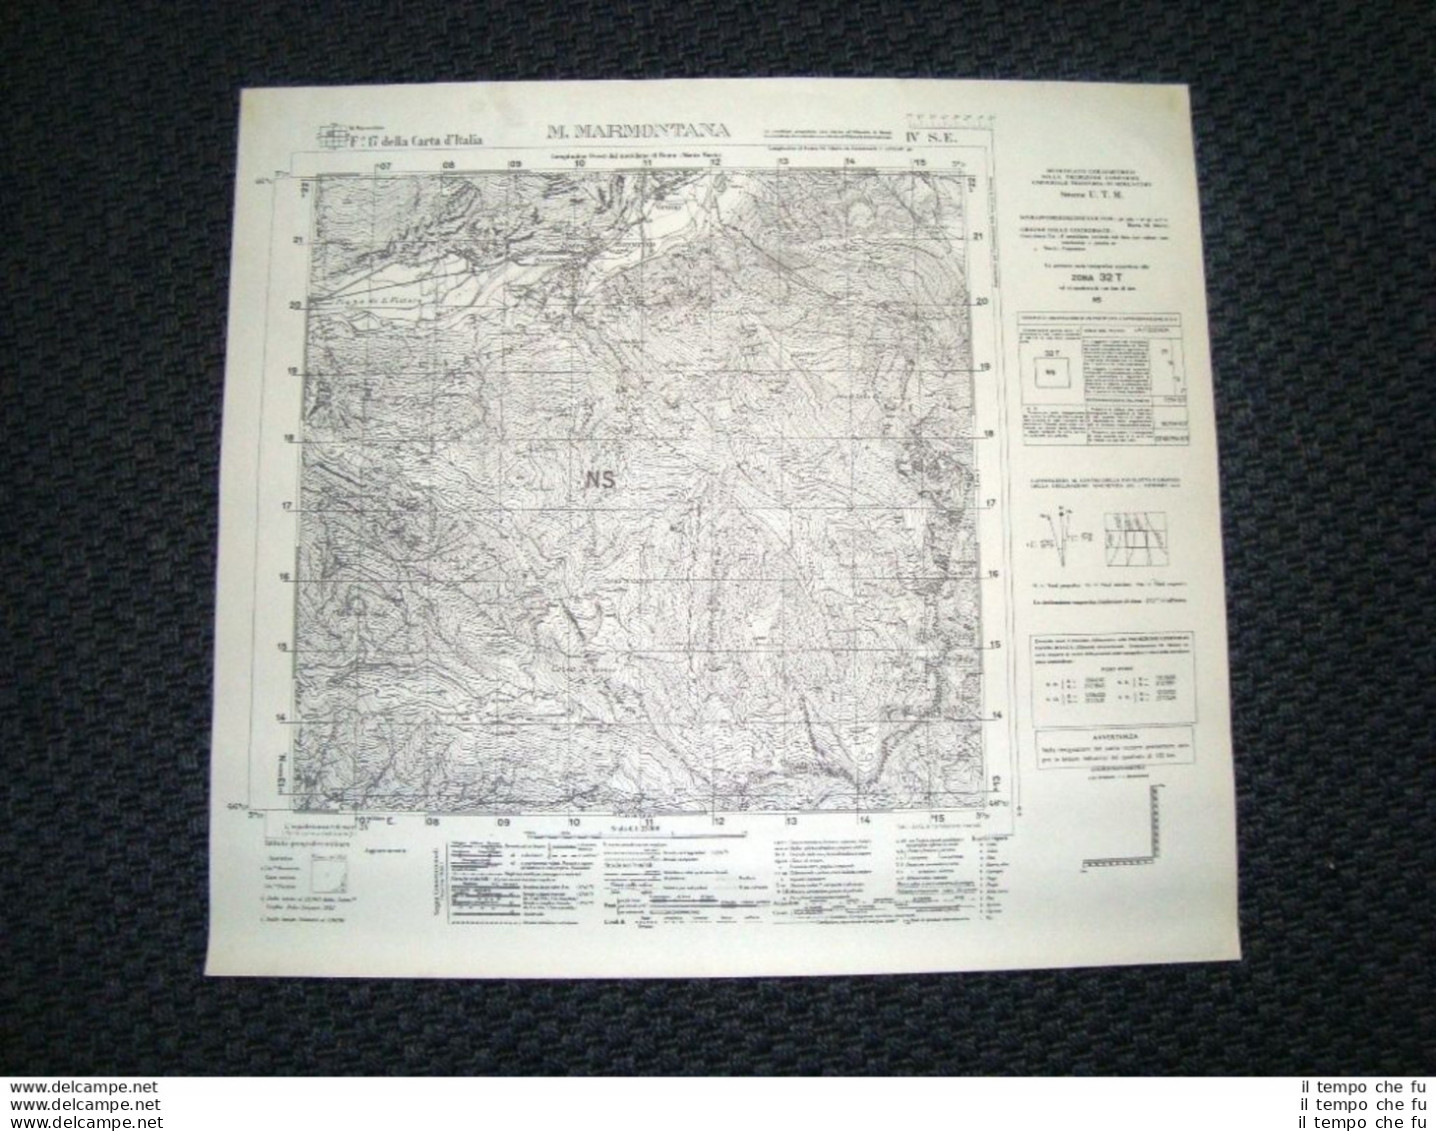 Grande Carta Topografica Monte Marmontana E Dintorni Dettagliatissima I.G.M. - Geographical Maps